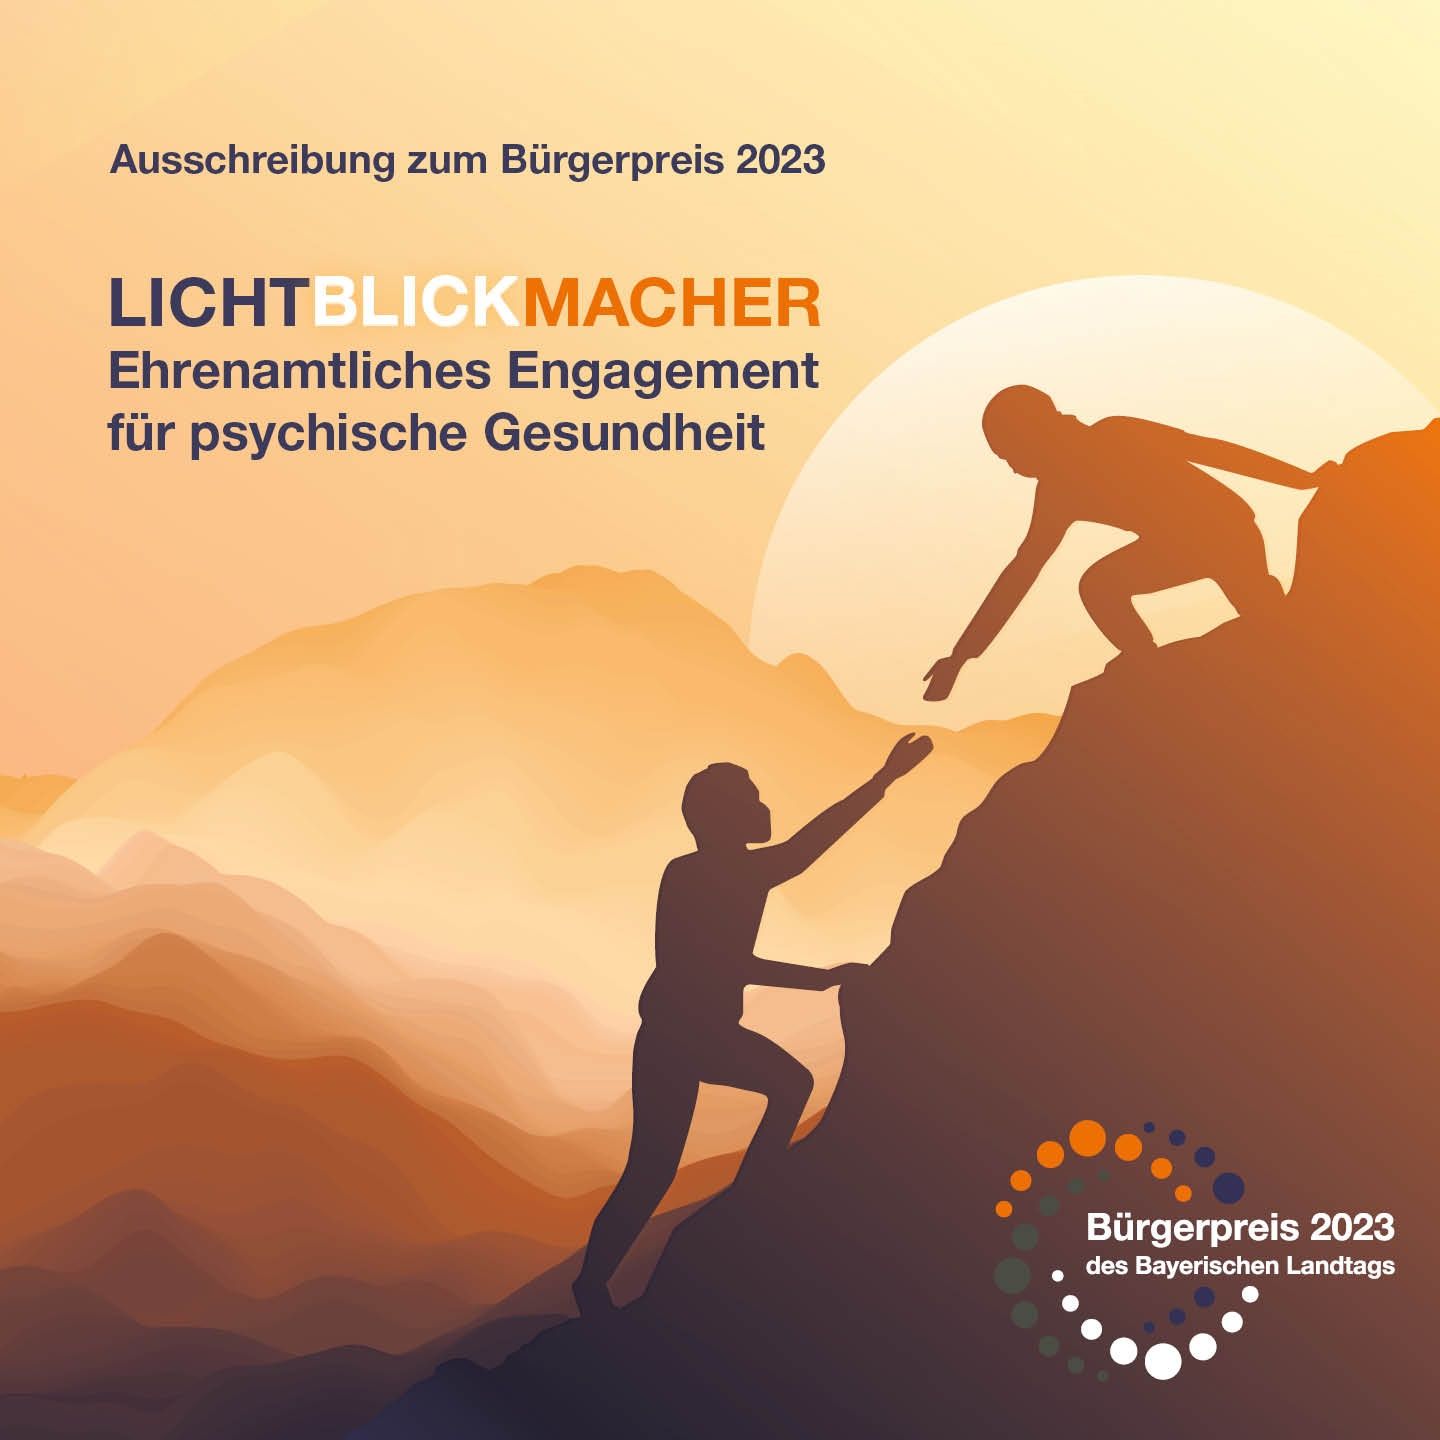 Bewerbungscover für Bürgerpreis des Bayerischen Landtags zum Thema "Psychische Gesundheit", zeigt zwei Bergsteiger - einer reichte dem anderen die Hand. Dahinter aufgehende Sonne